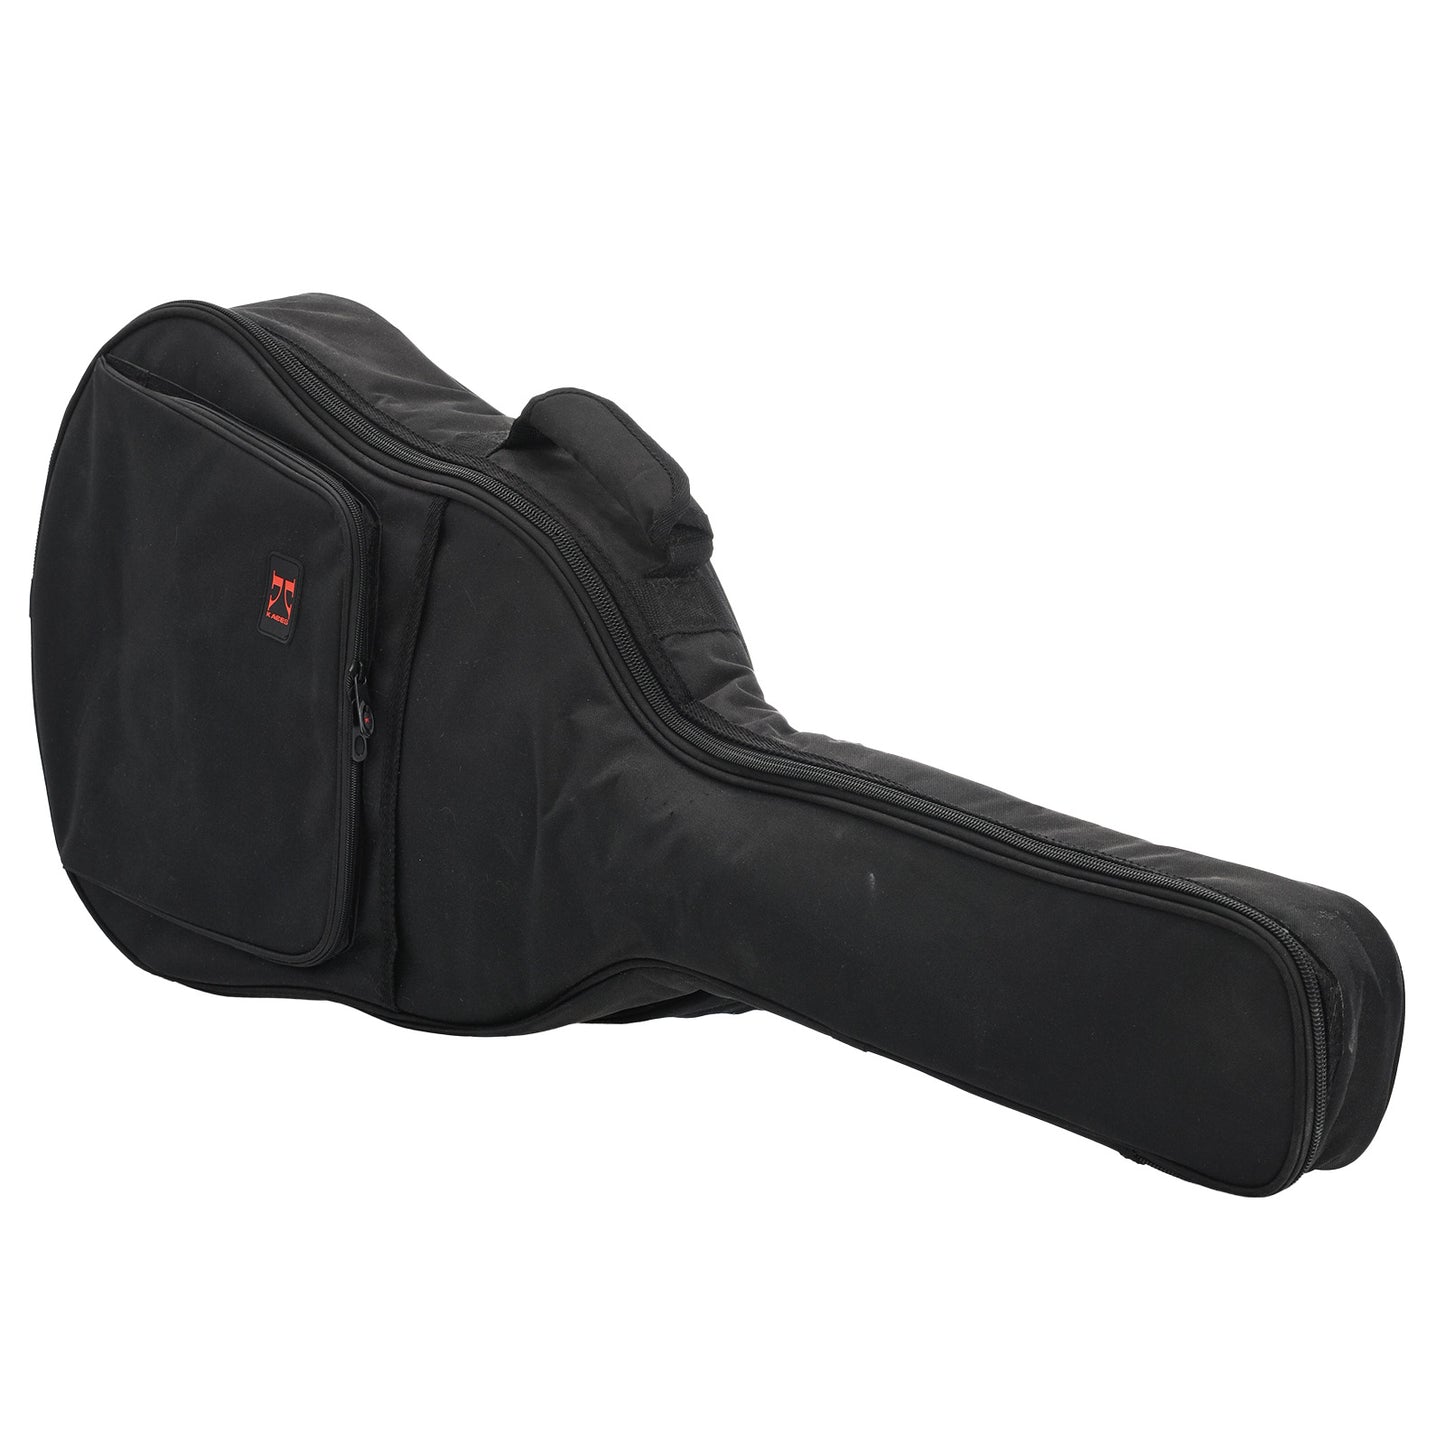 Gig bag for Yamaha CG102 Classical Guitar (2017)